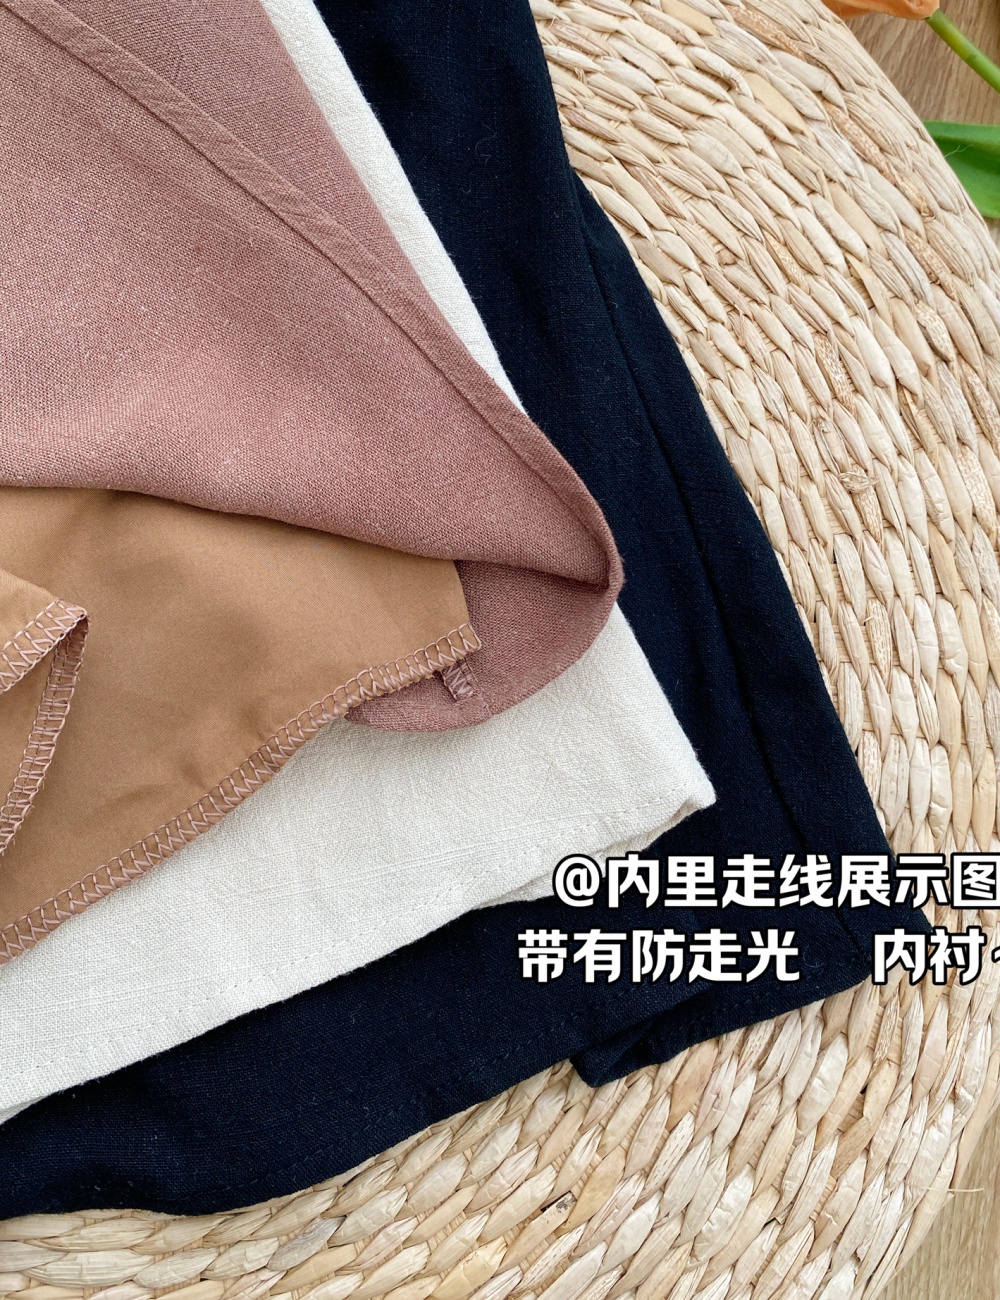 Pure cotton linen tops sleeveless short skirt a set